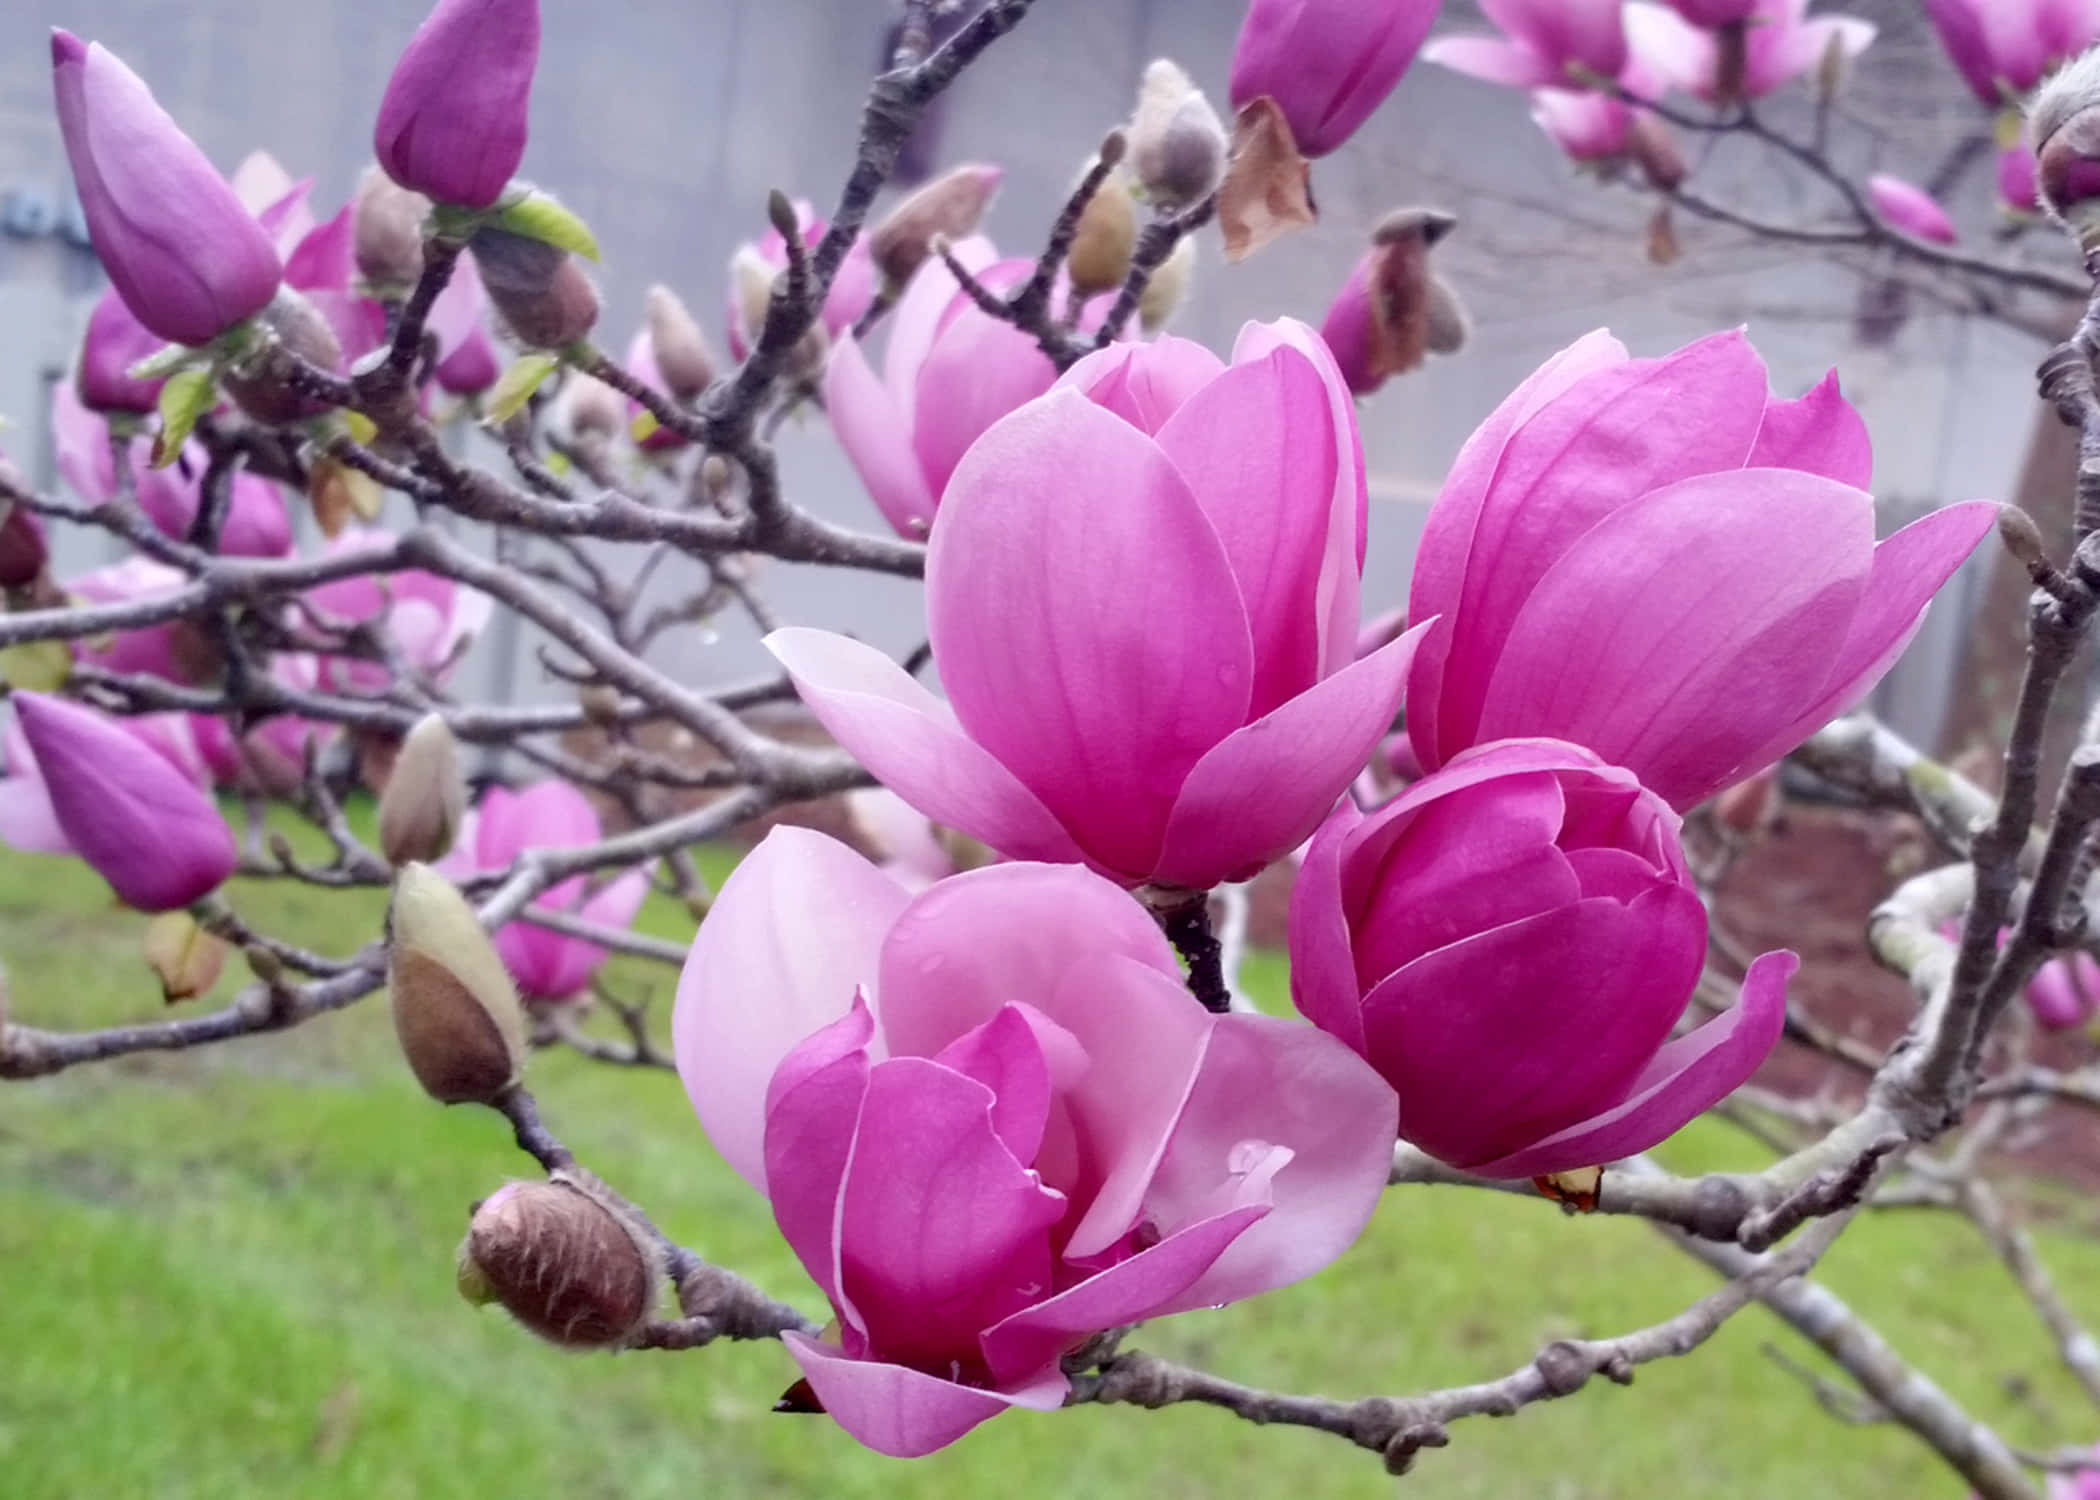 Magnoliablomster I Blomst.